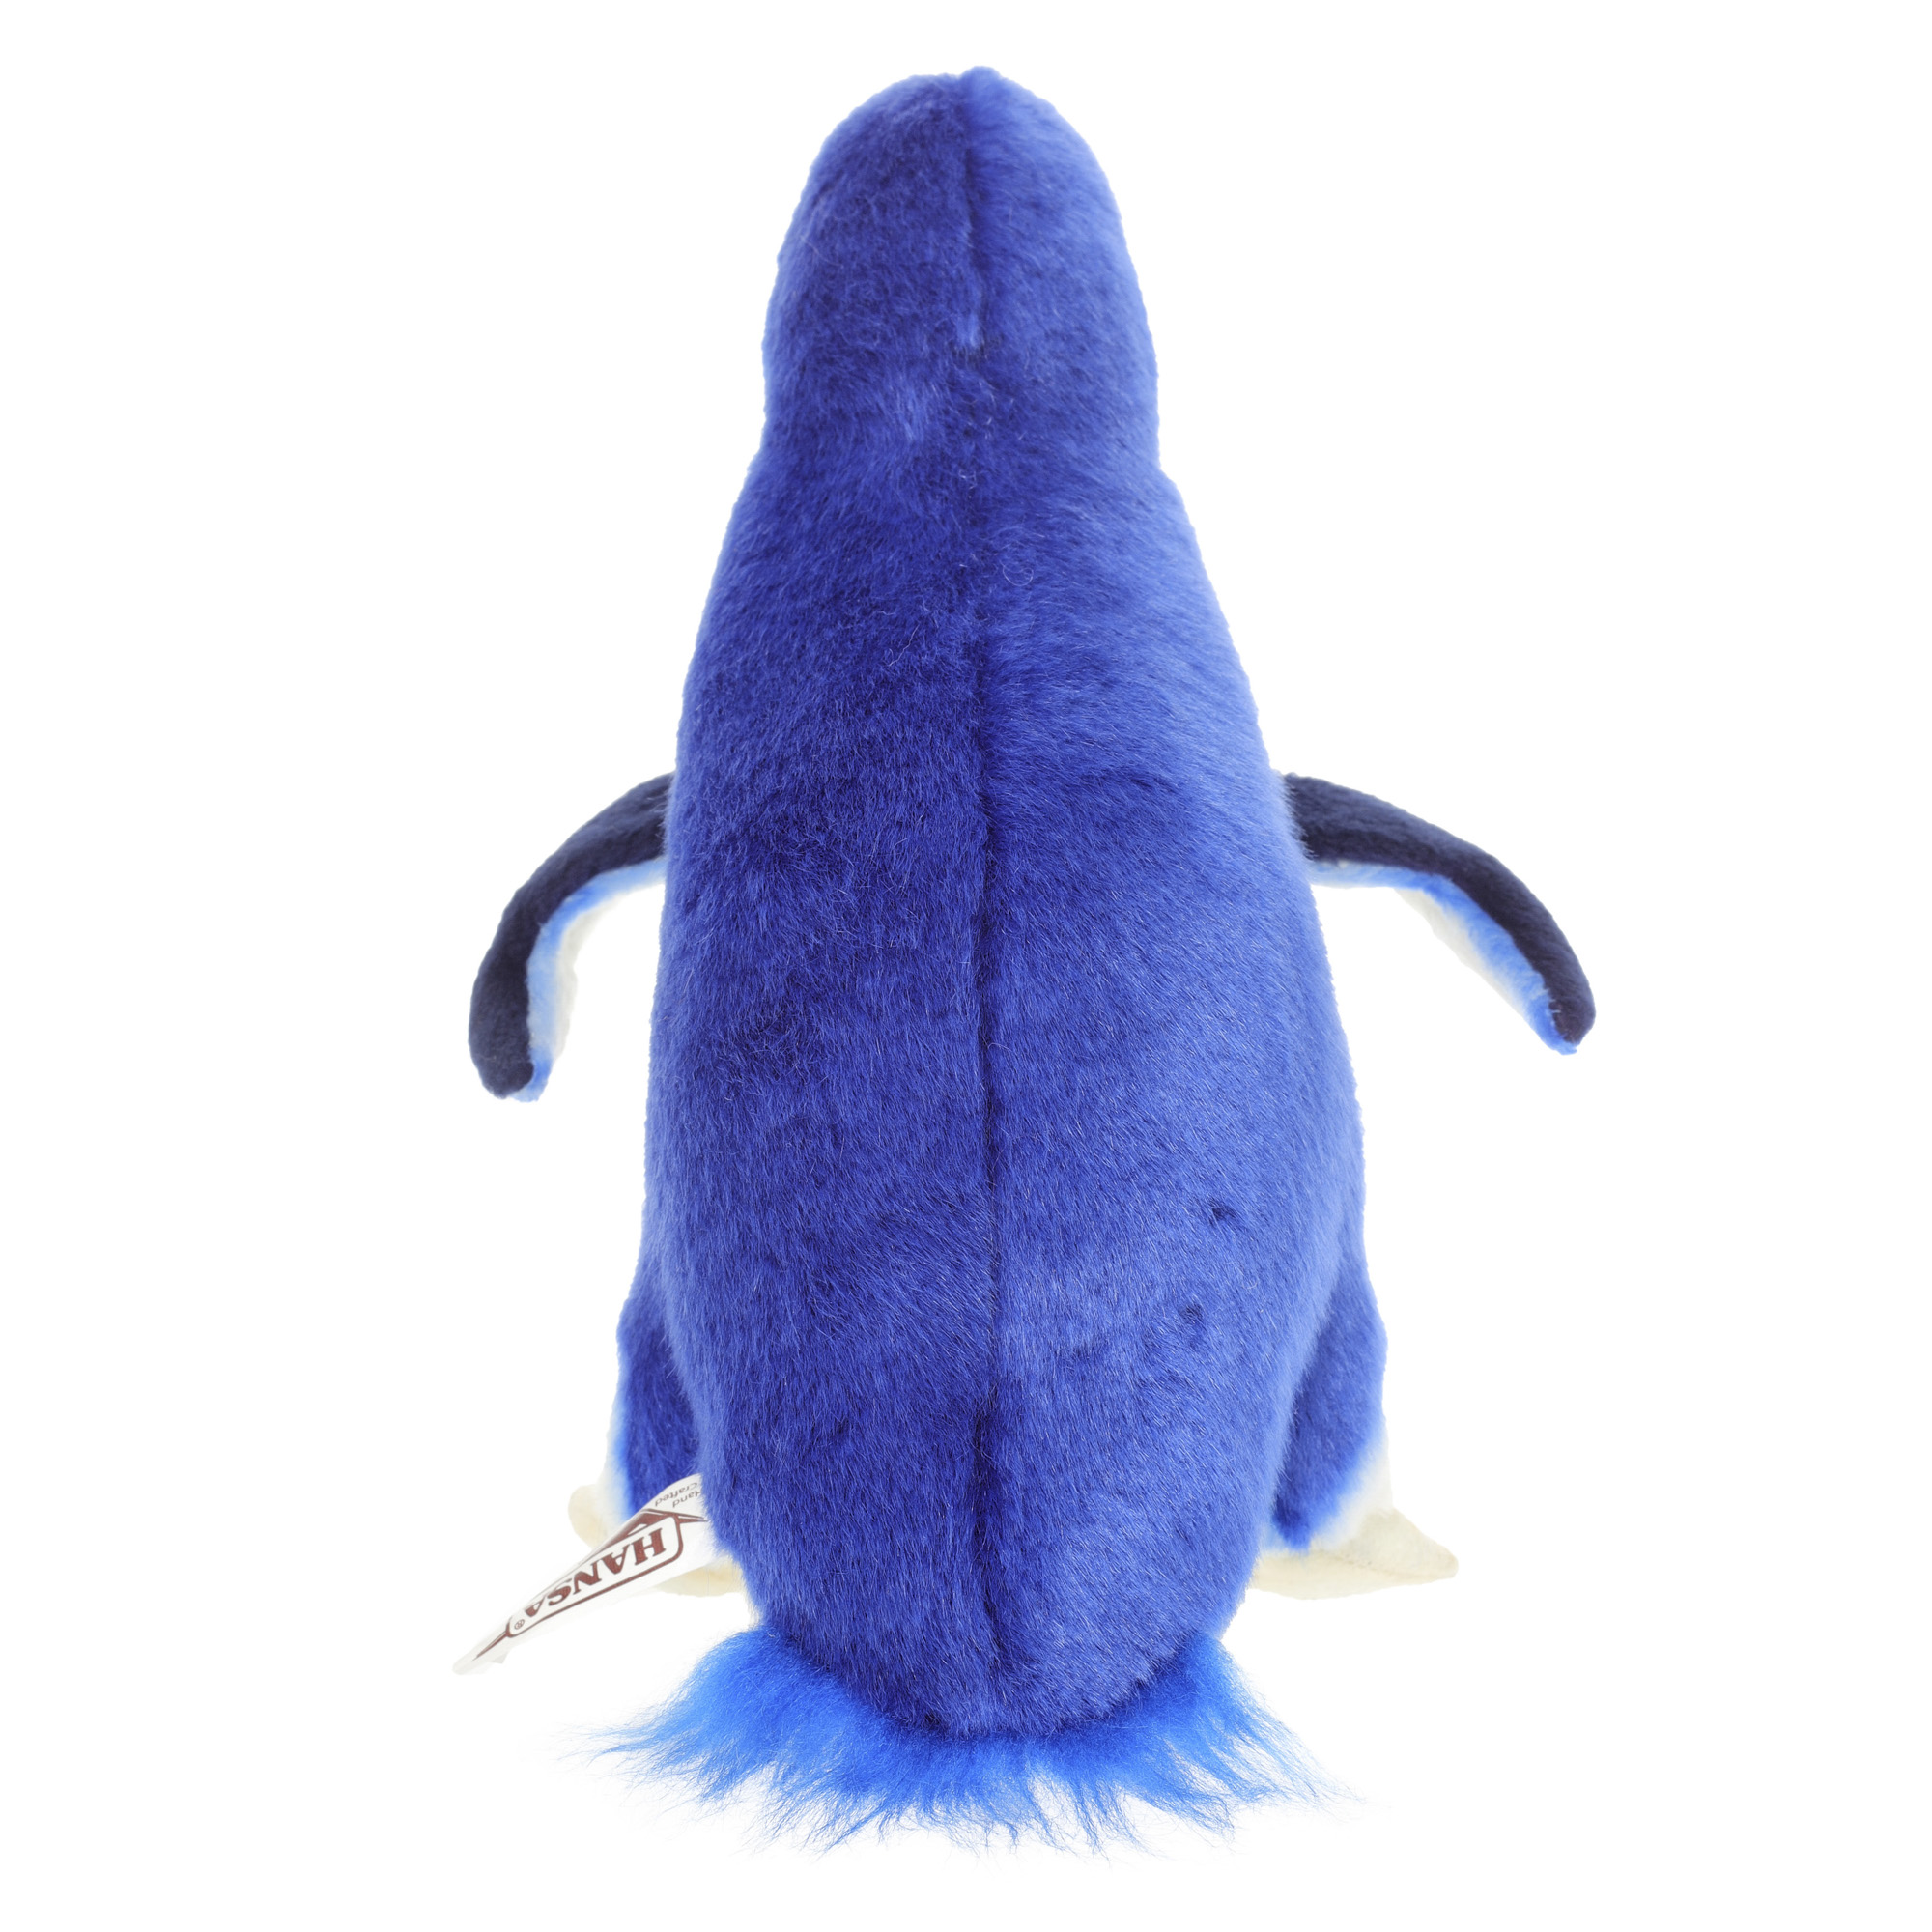 Реалистичная игрушка HANSA Пингвин малый голубой 20 см - фото 5